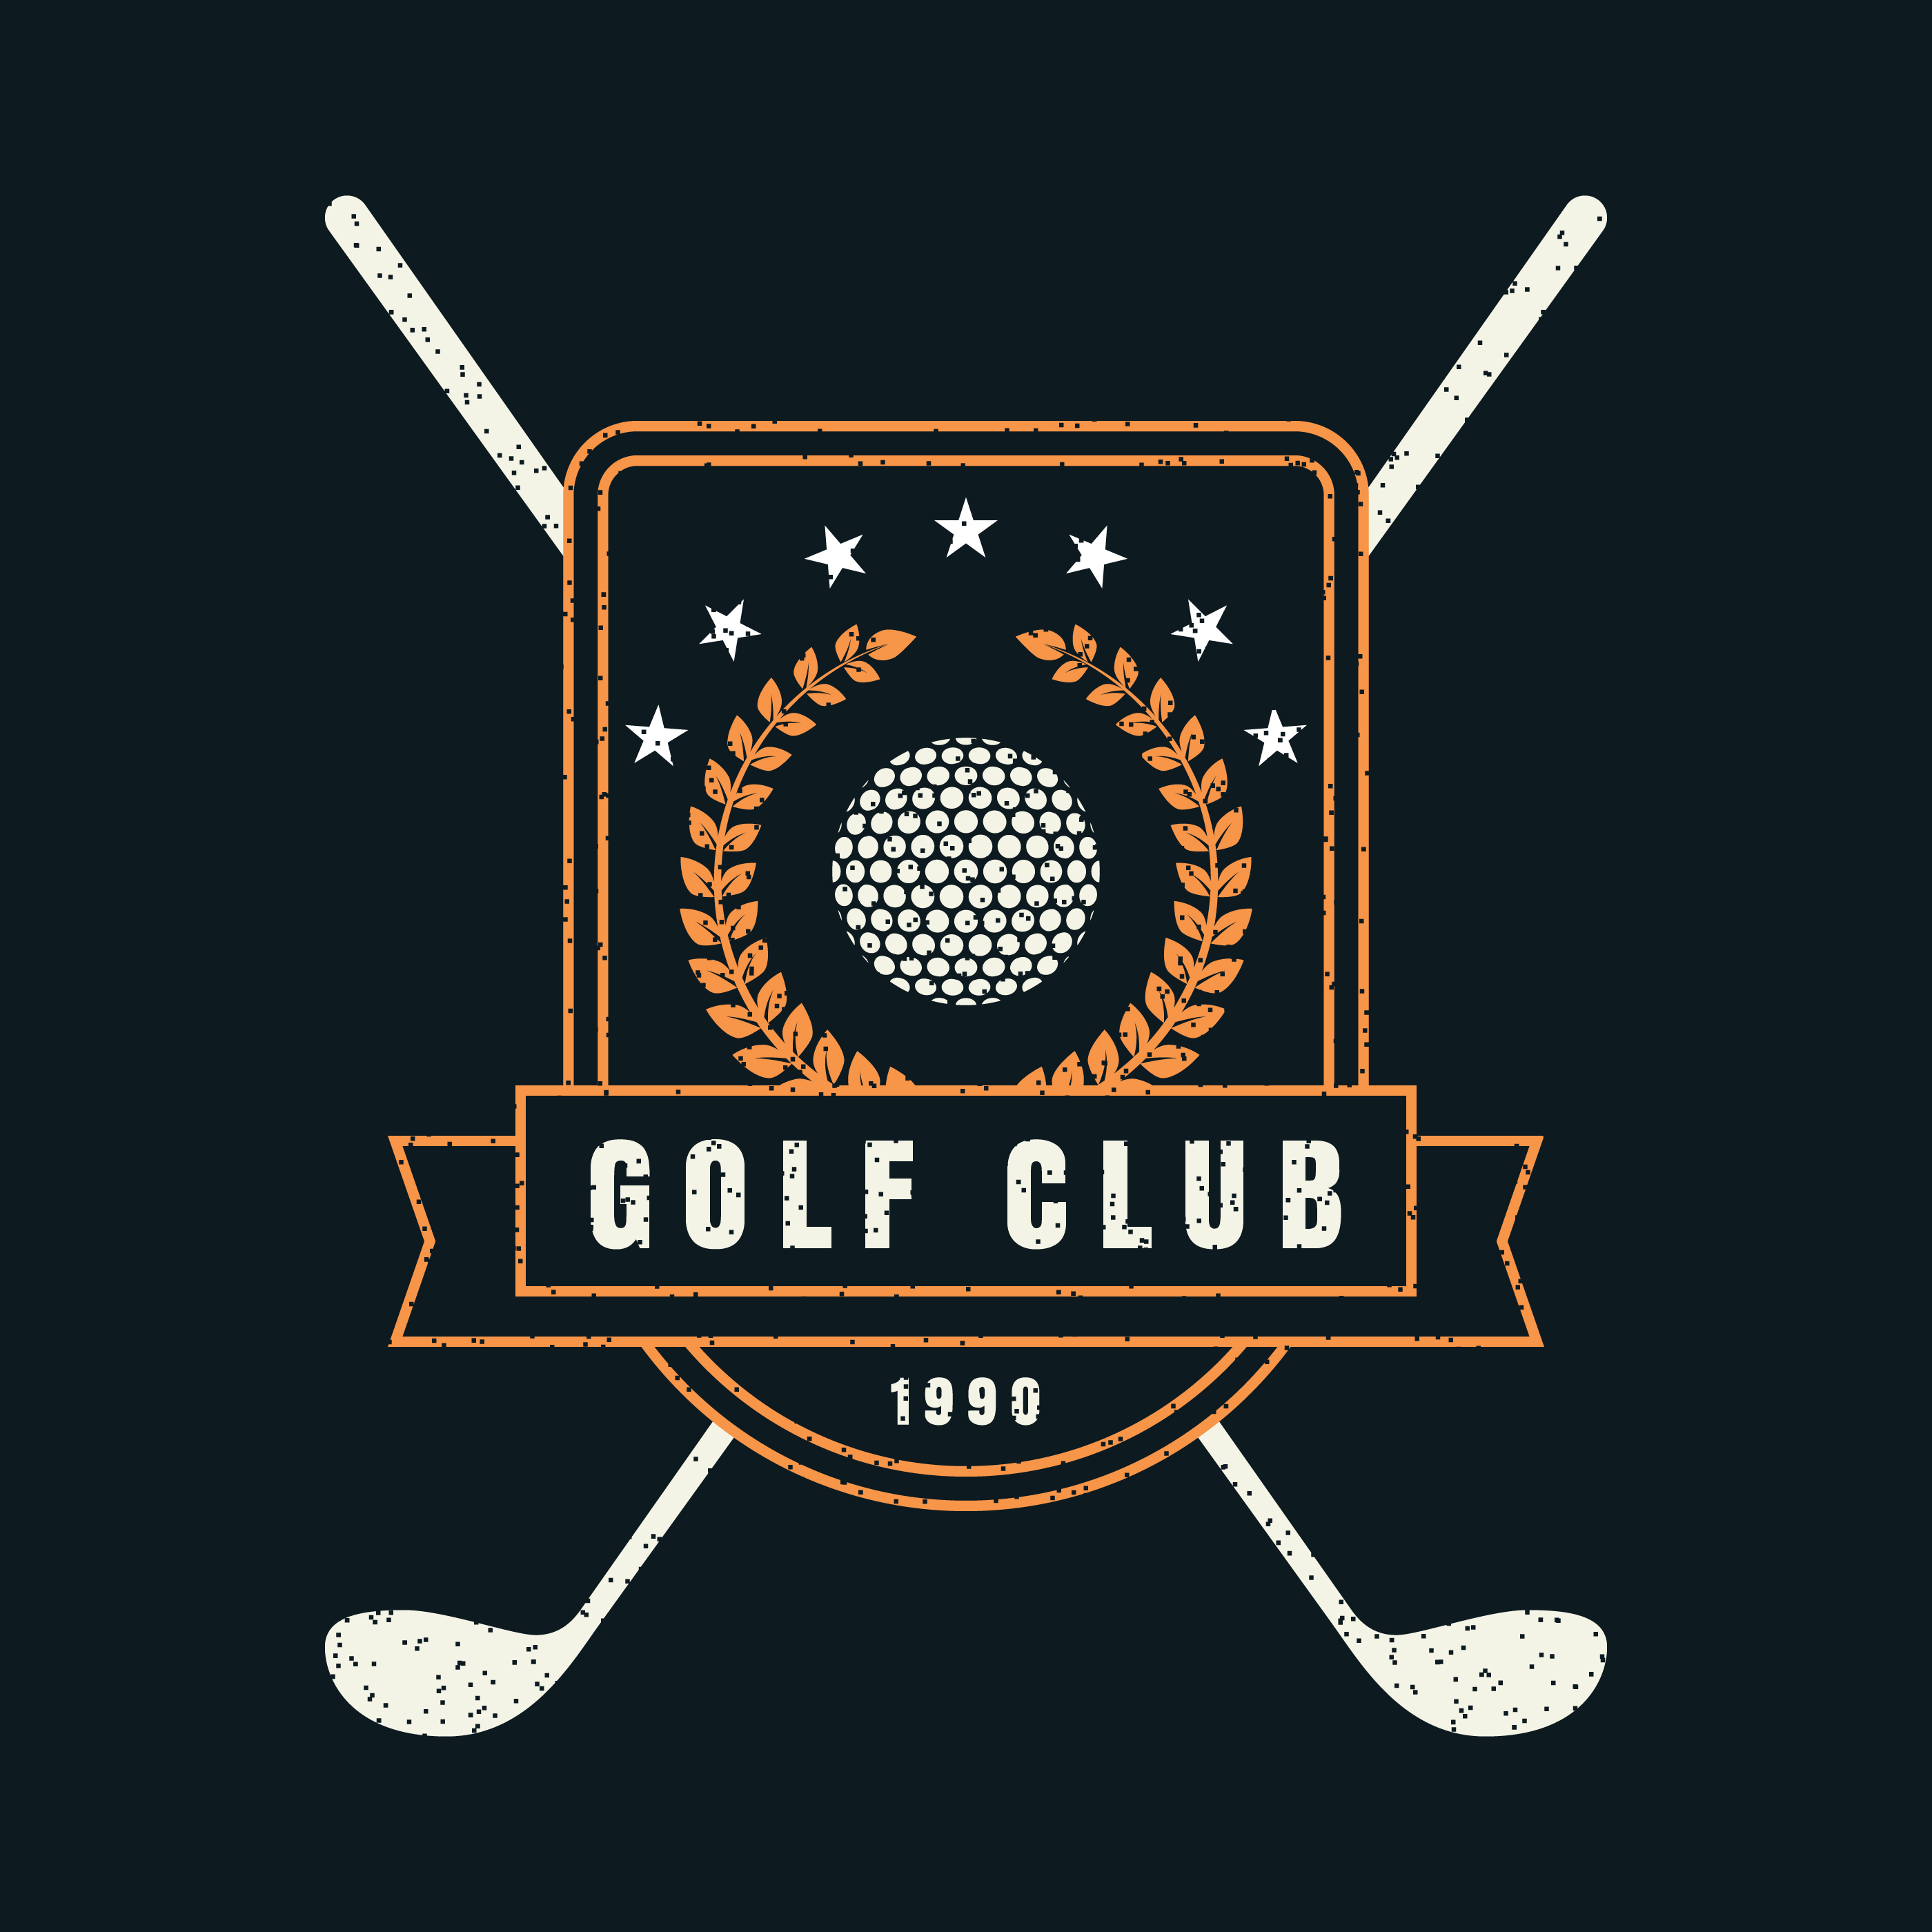 Download Golf Club Retro Badge - Download Free Vectors, Clipart Graphics & Vector Art